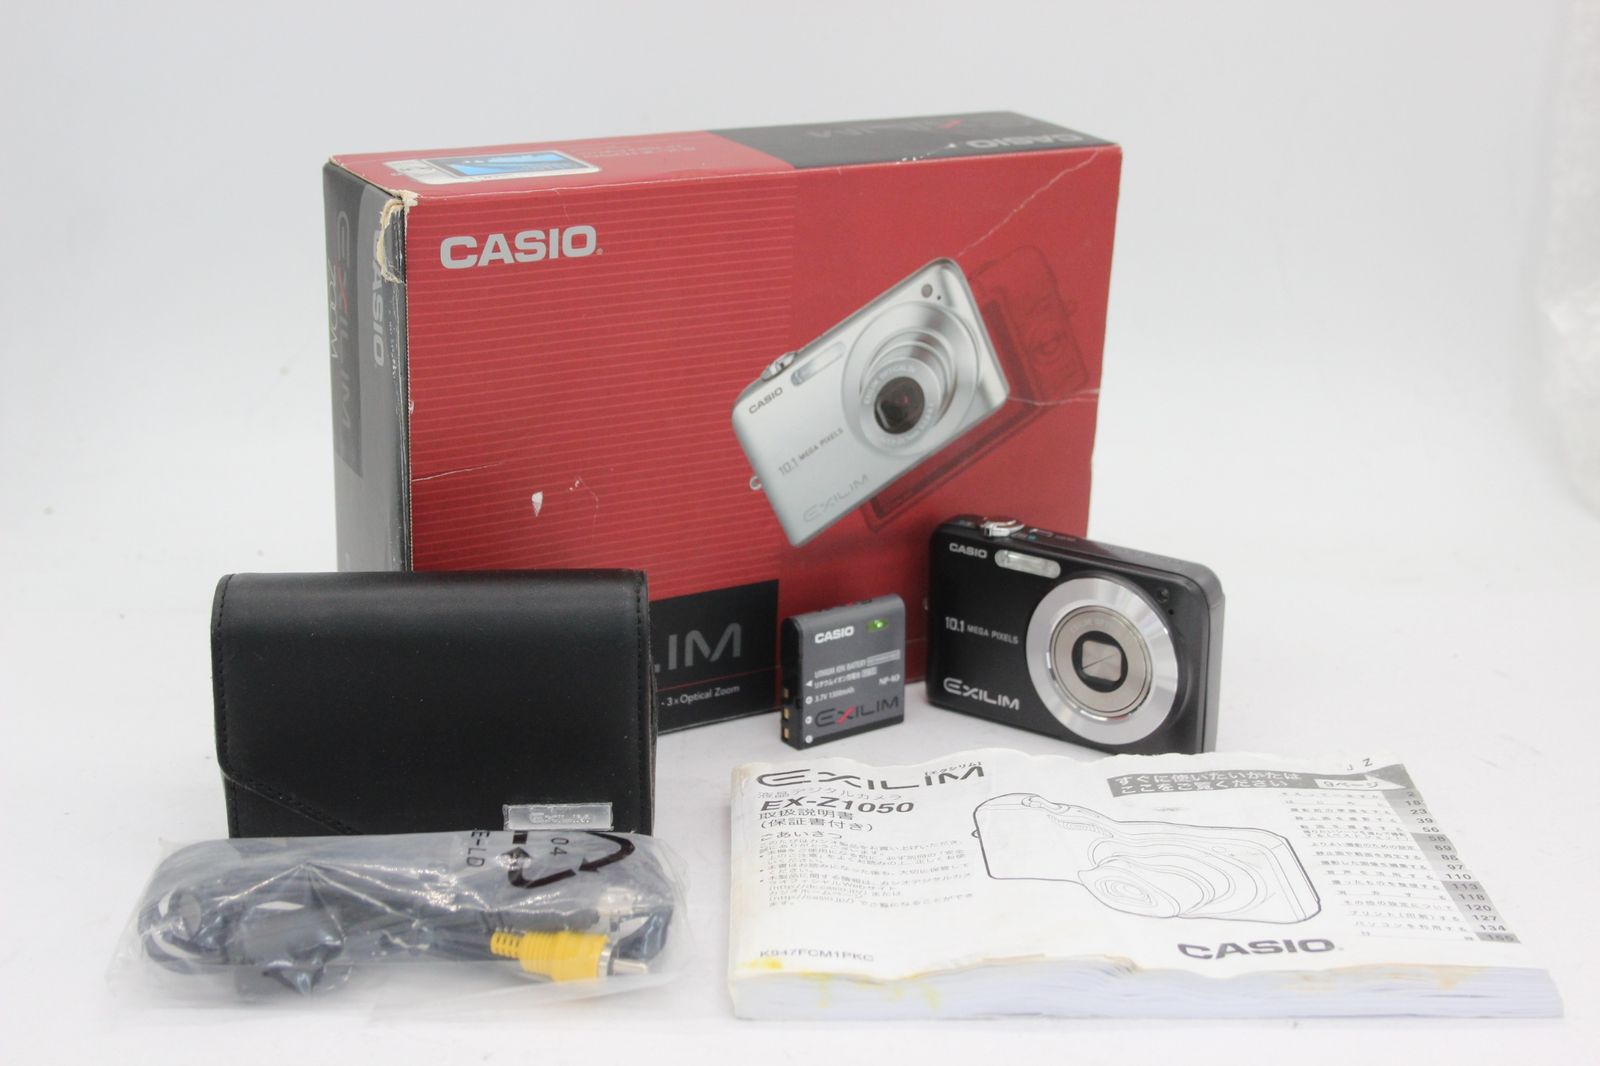 【返品保証】 【元箱付き】カシオ Casio Exilim EX-Z1050 ブラック 3x バッテリー付き コンパクトデジタルカメラ v903